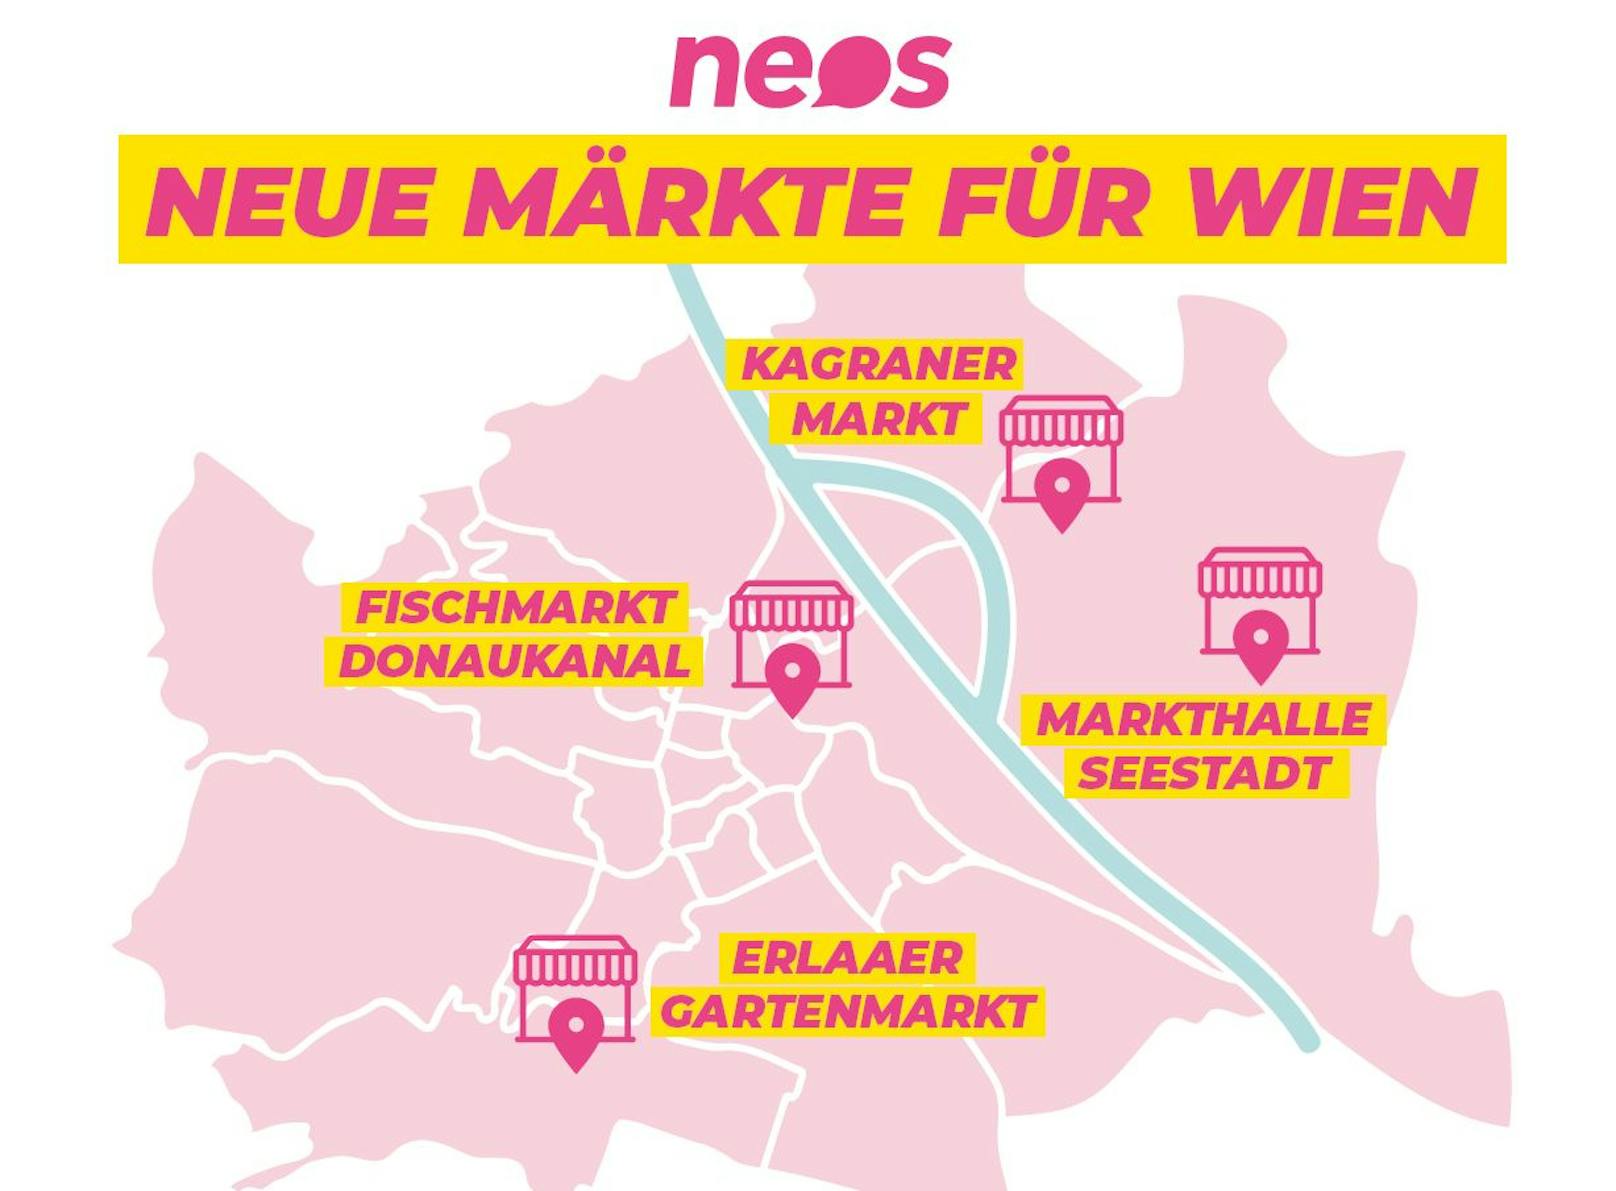 An diesen vier Standorten hätten die Wiener Neos gerne neue Märkte.